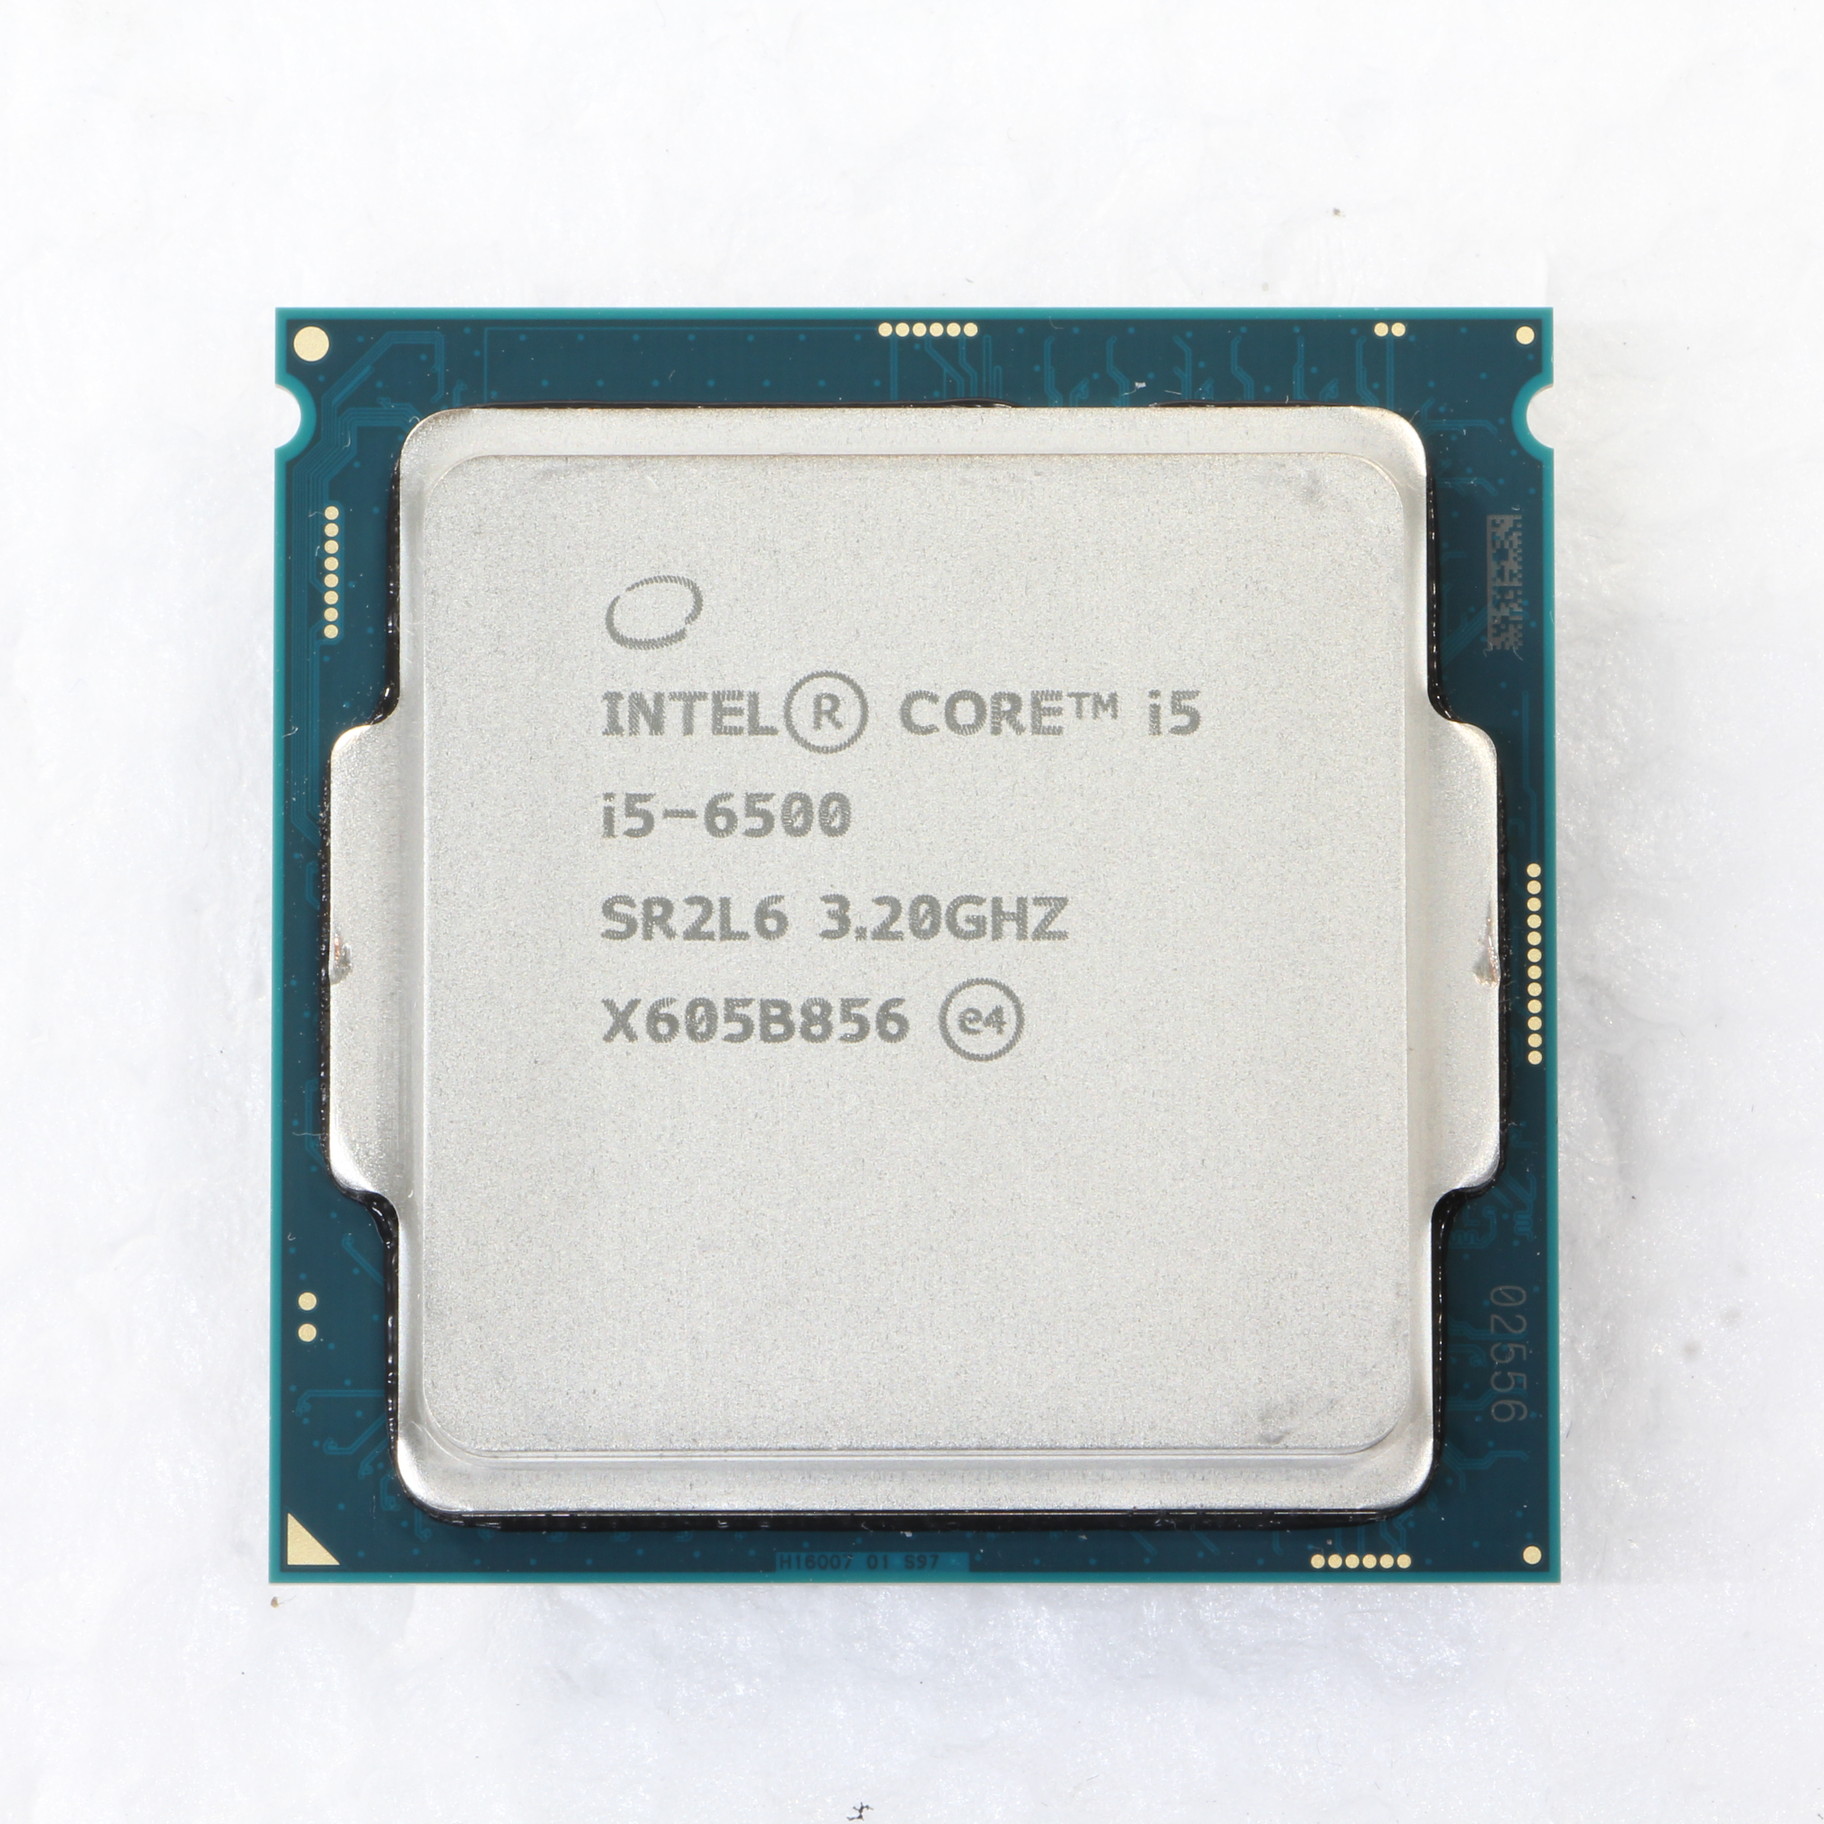 intel core i5-6500 3.2GHz CPU